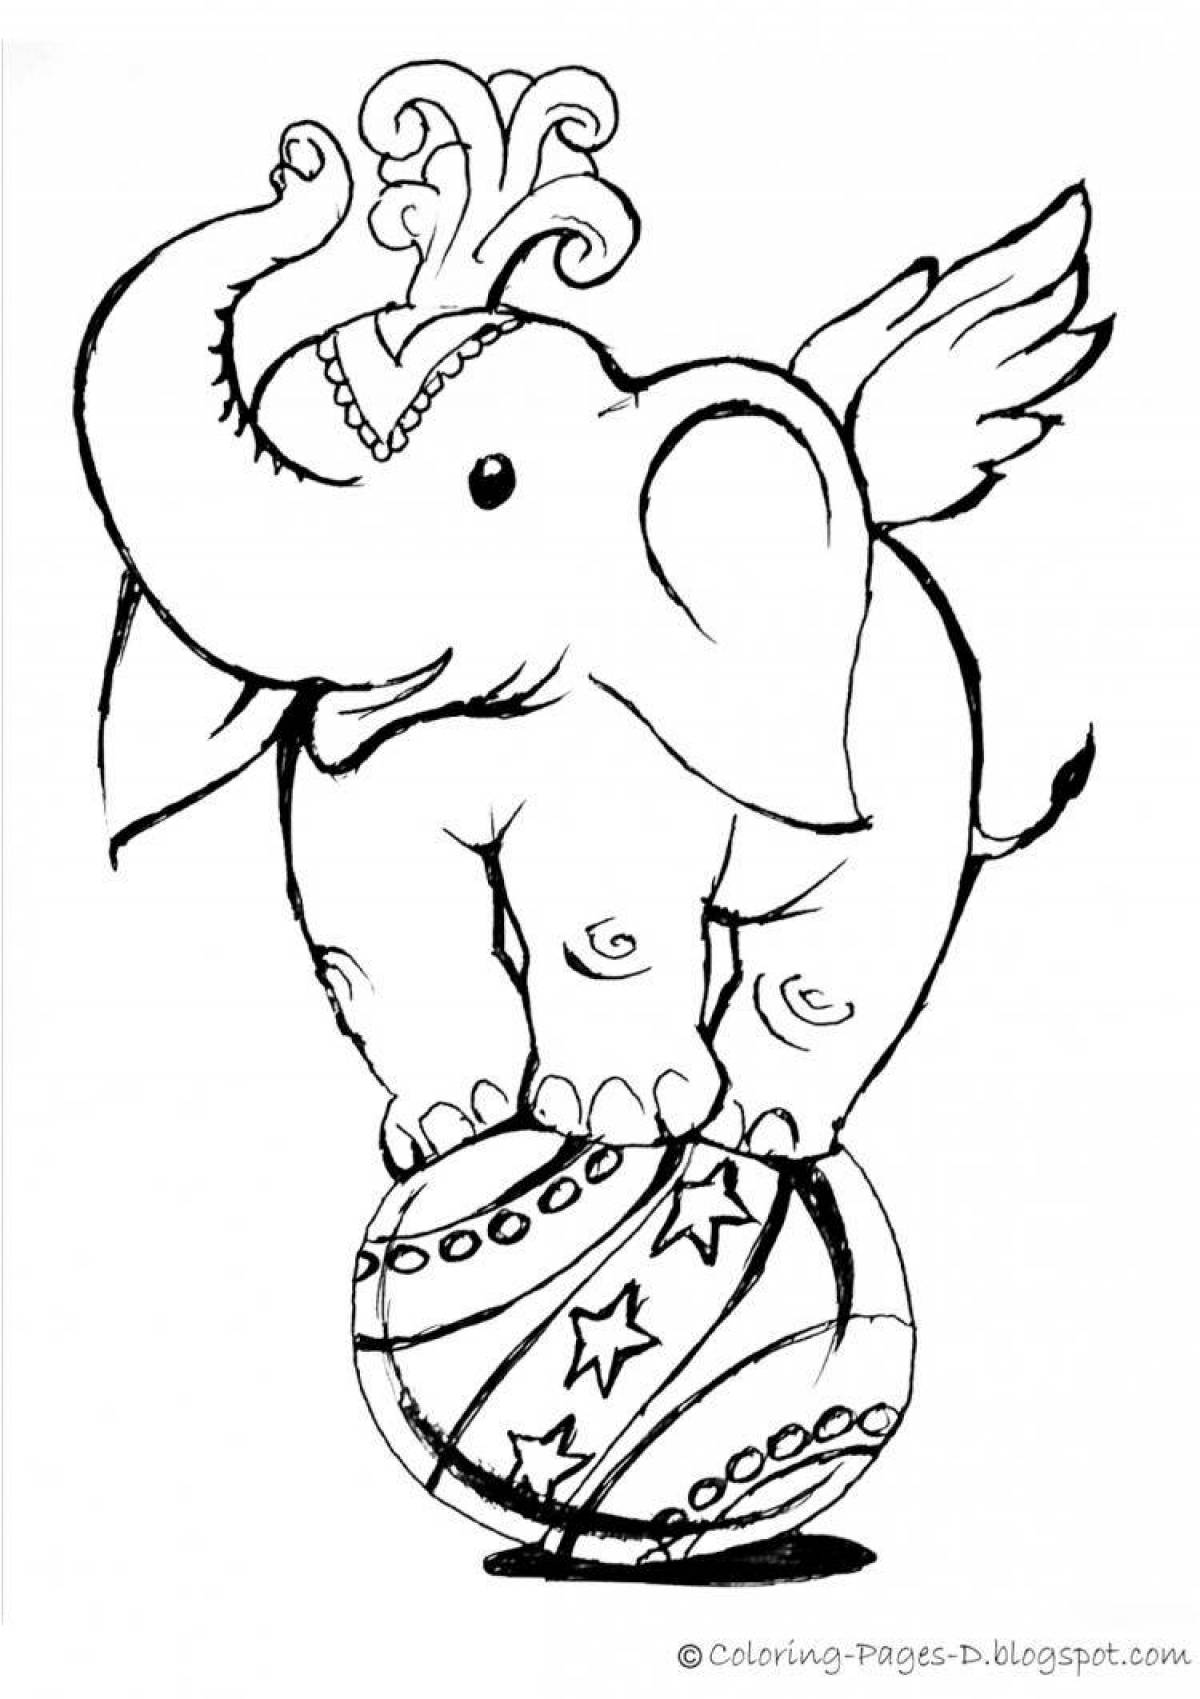 Coloring book playful circus elephant